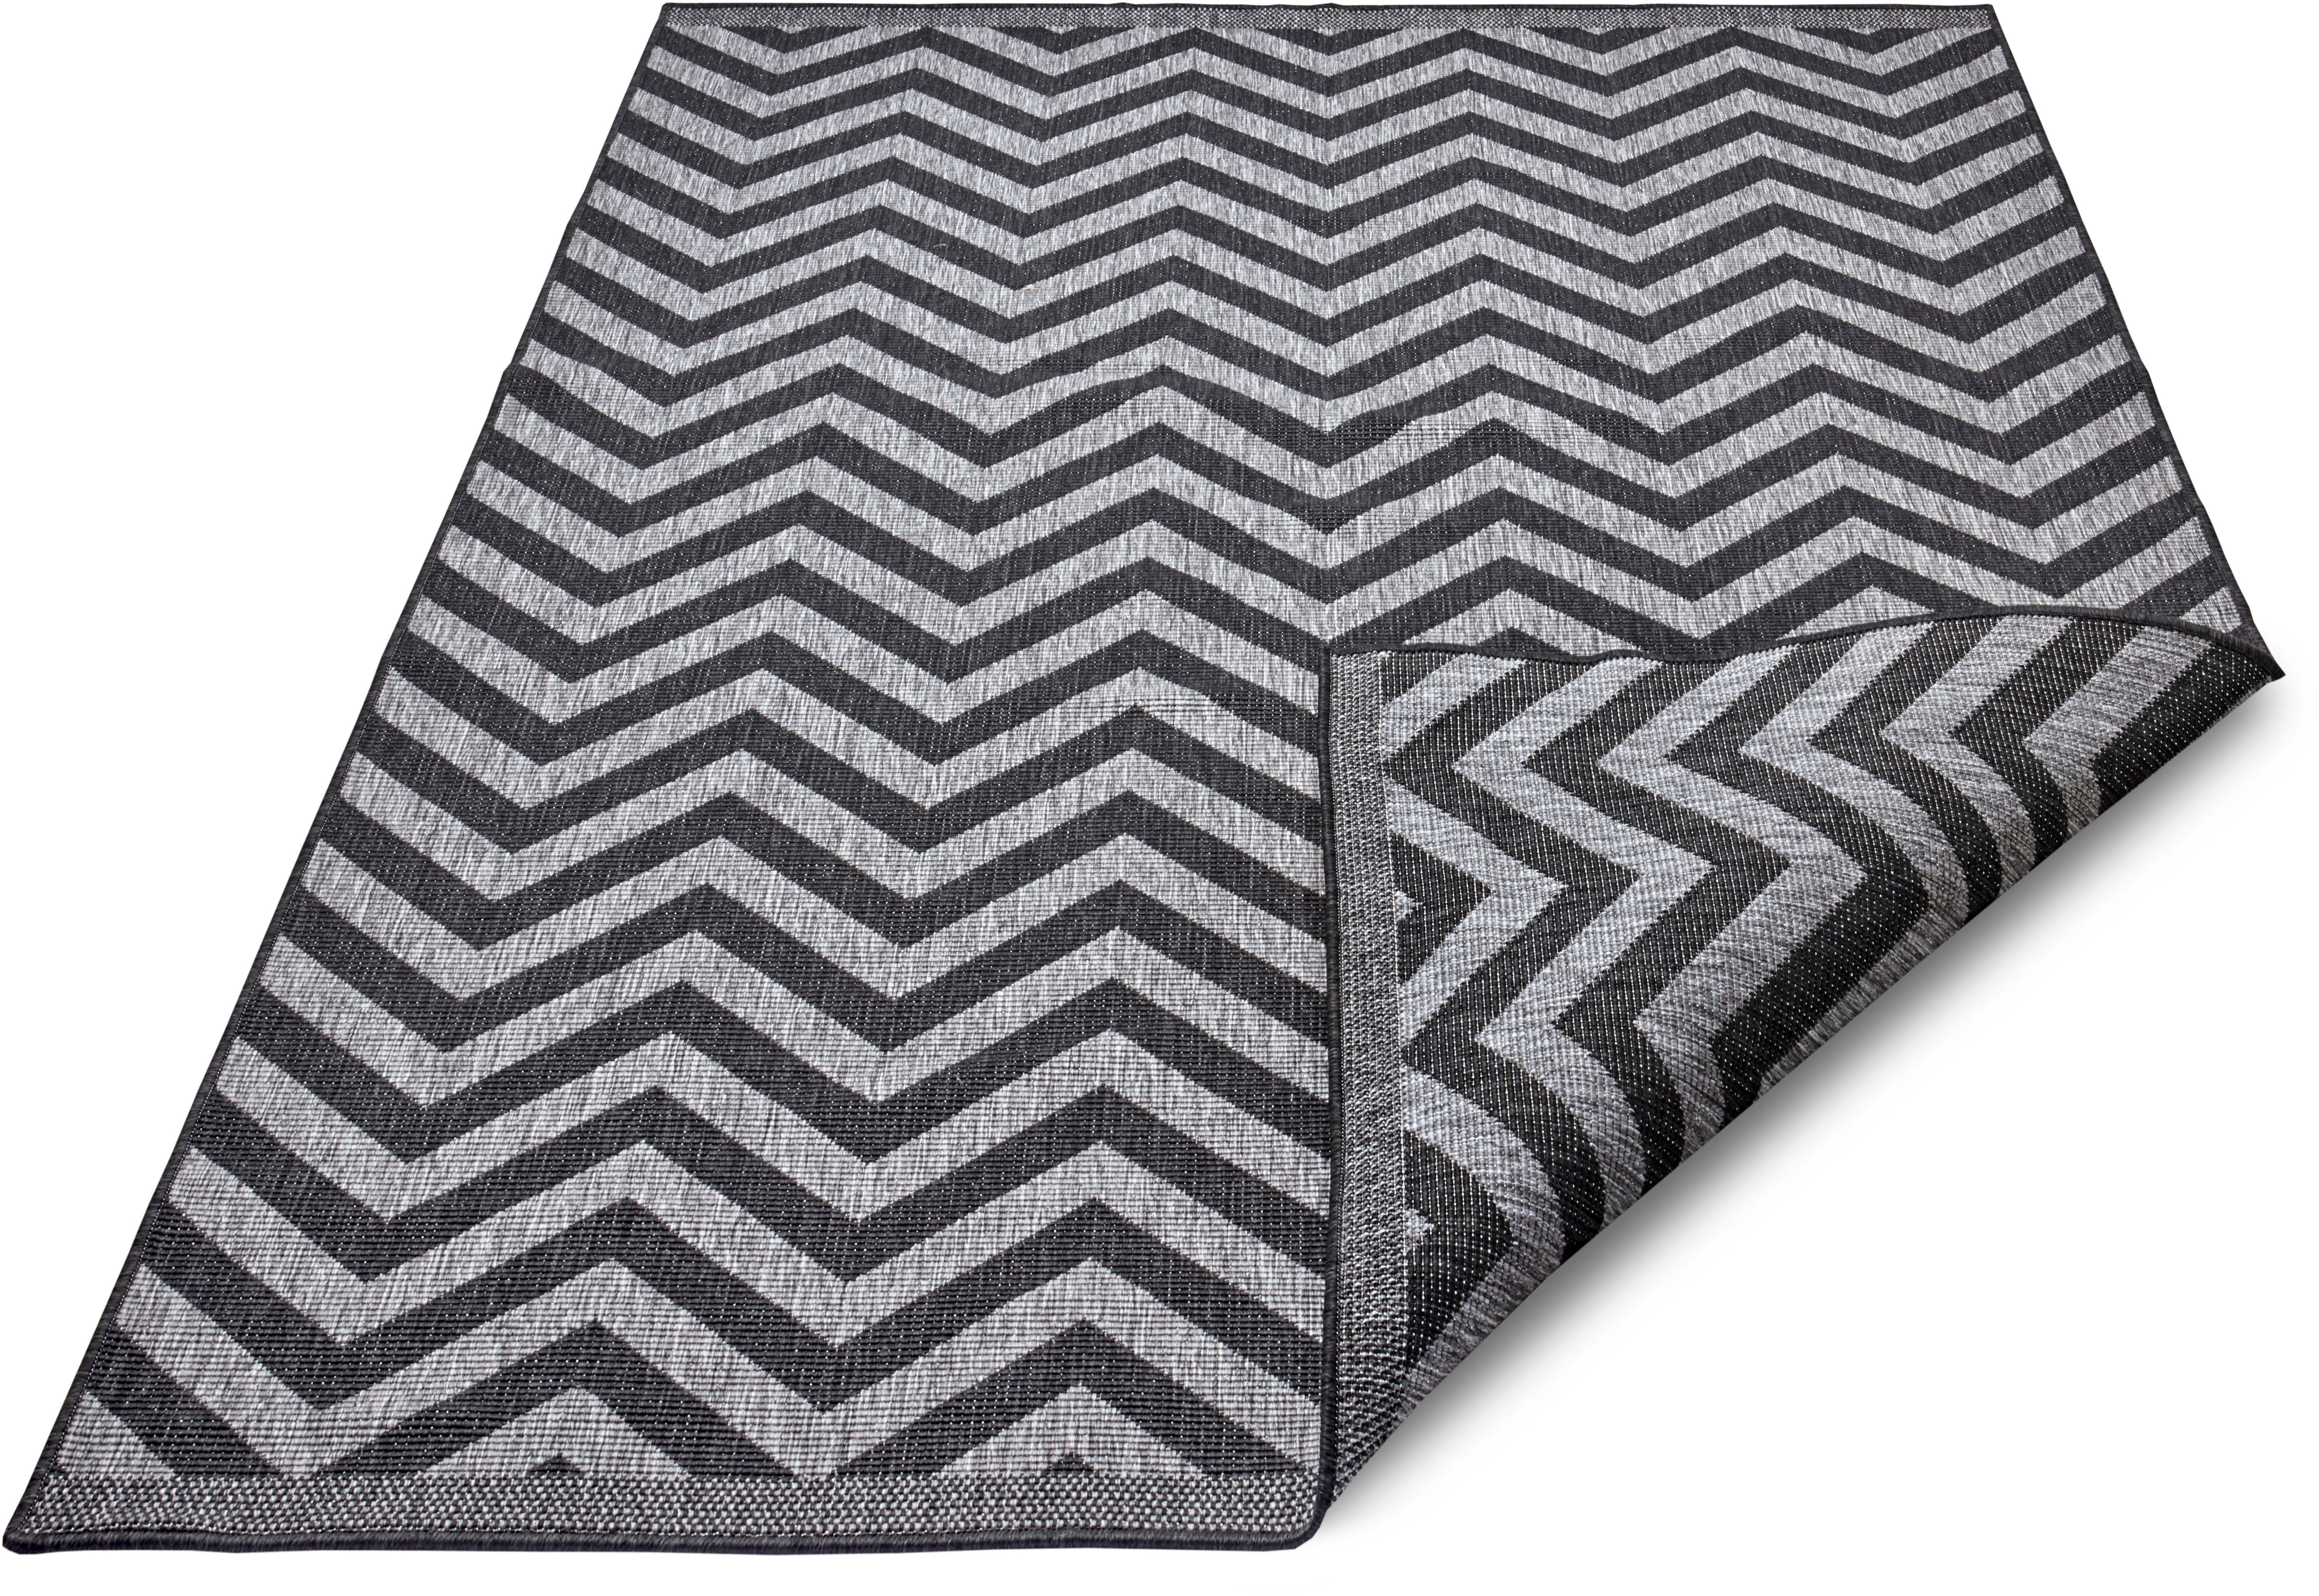 Binnen & buiten vloerkleed zigzag Palma - zilver/zwart 120x170 cm